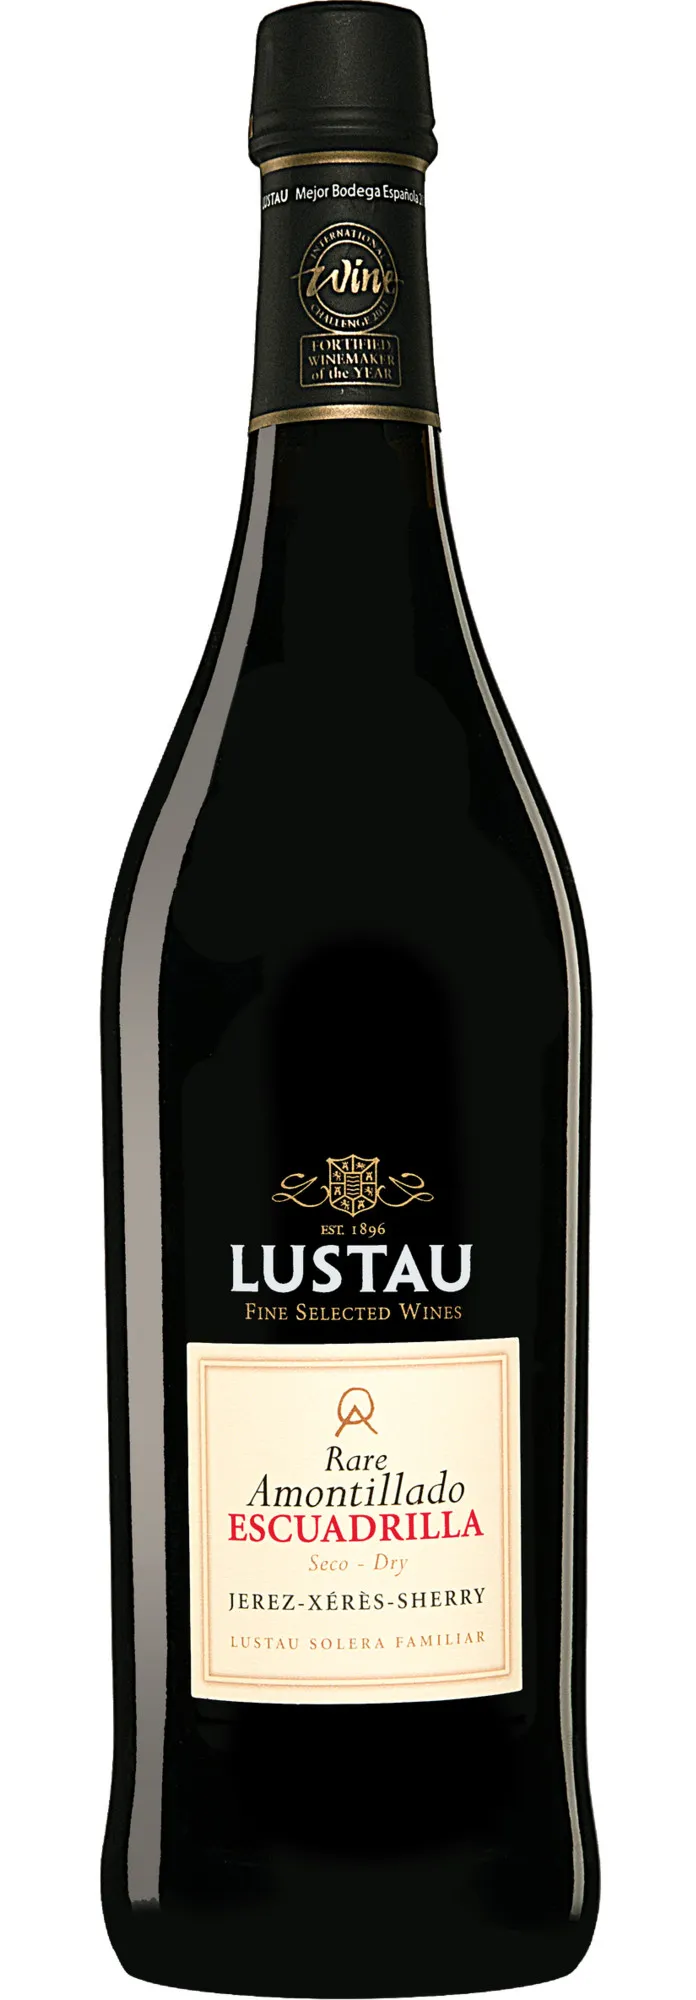 Bottle of Lustau Jerez-Xeres-Sherry Reserva Solera Rare Amontillado Escuadrilla from search results